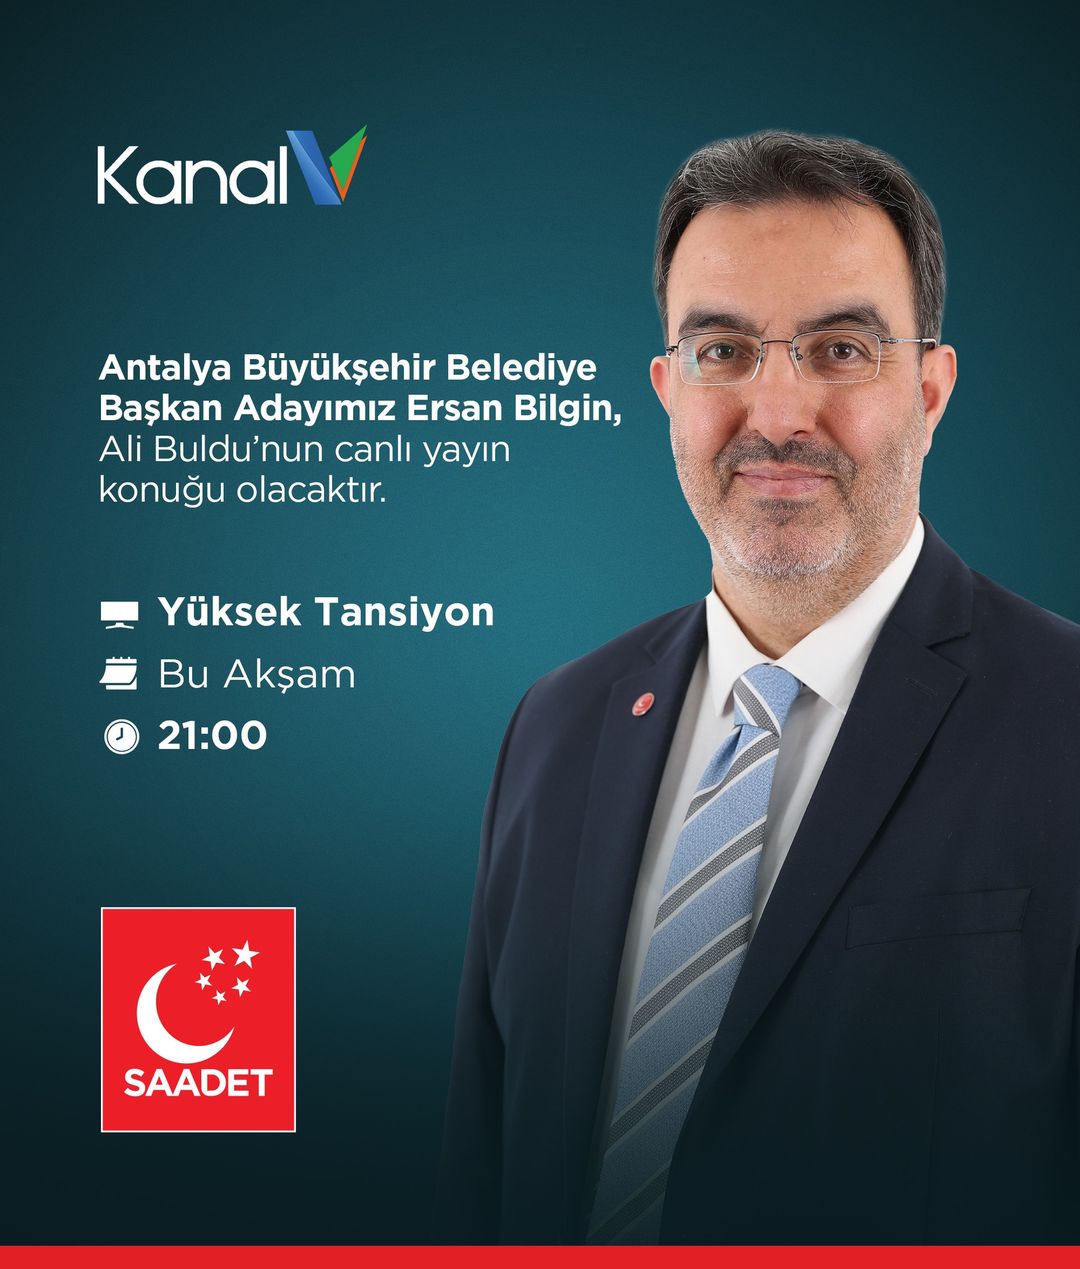 Saadet Partisi Adayı Ersan Bilgin, Antalya'da canlı yayında politik hedeflerini ve projelerini açıklayacak.